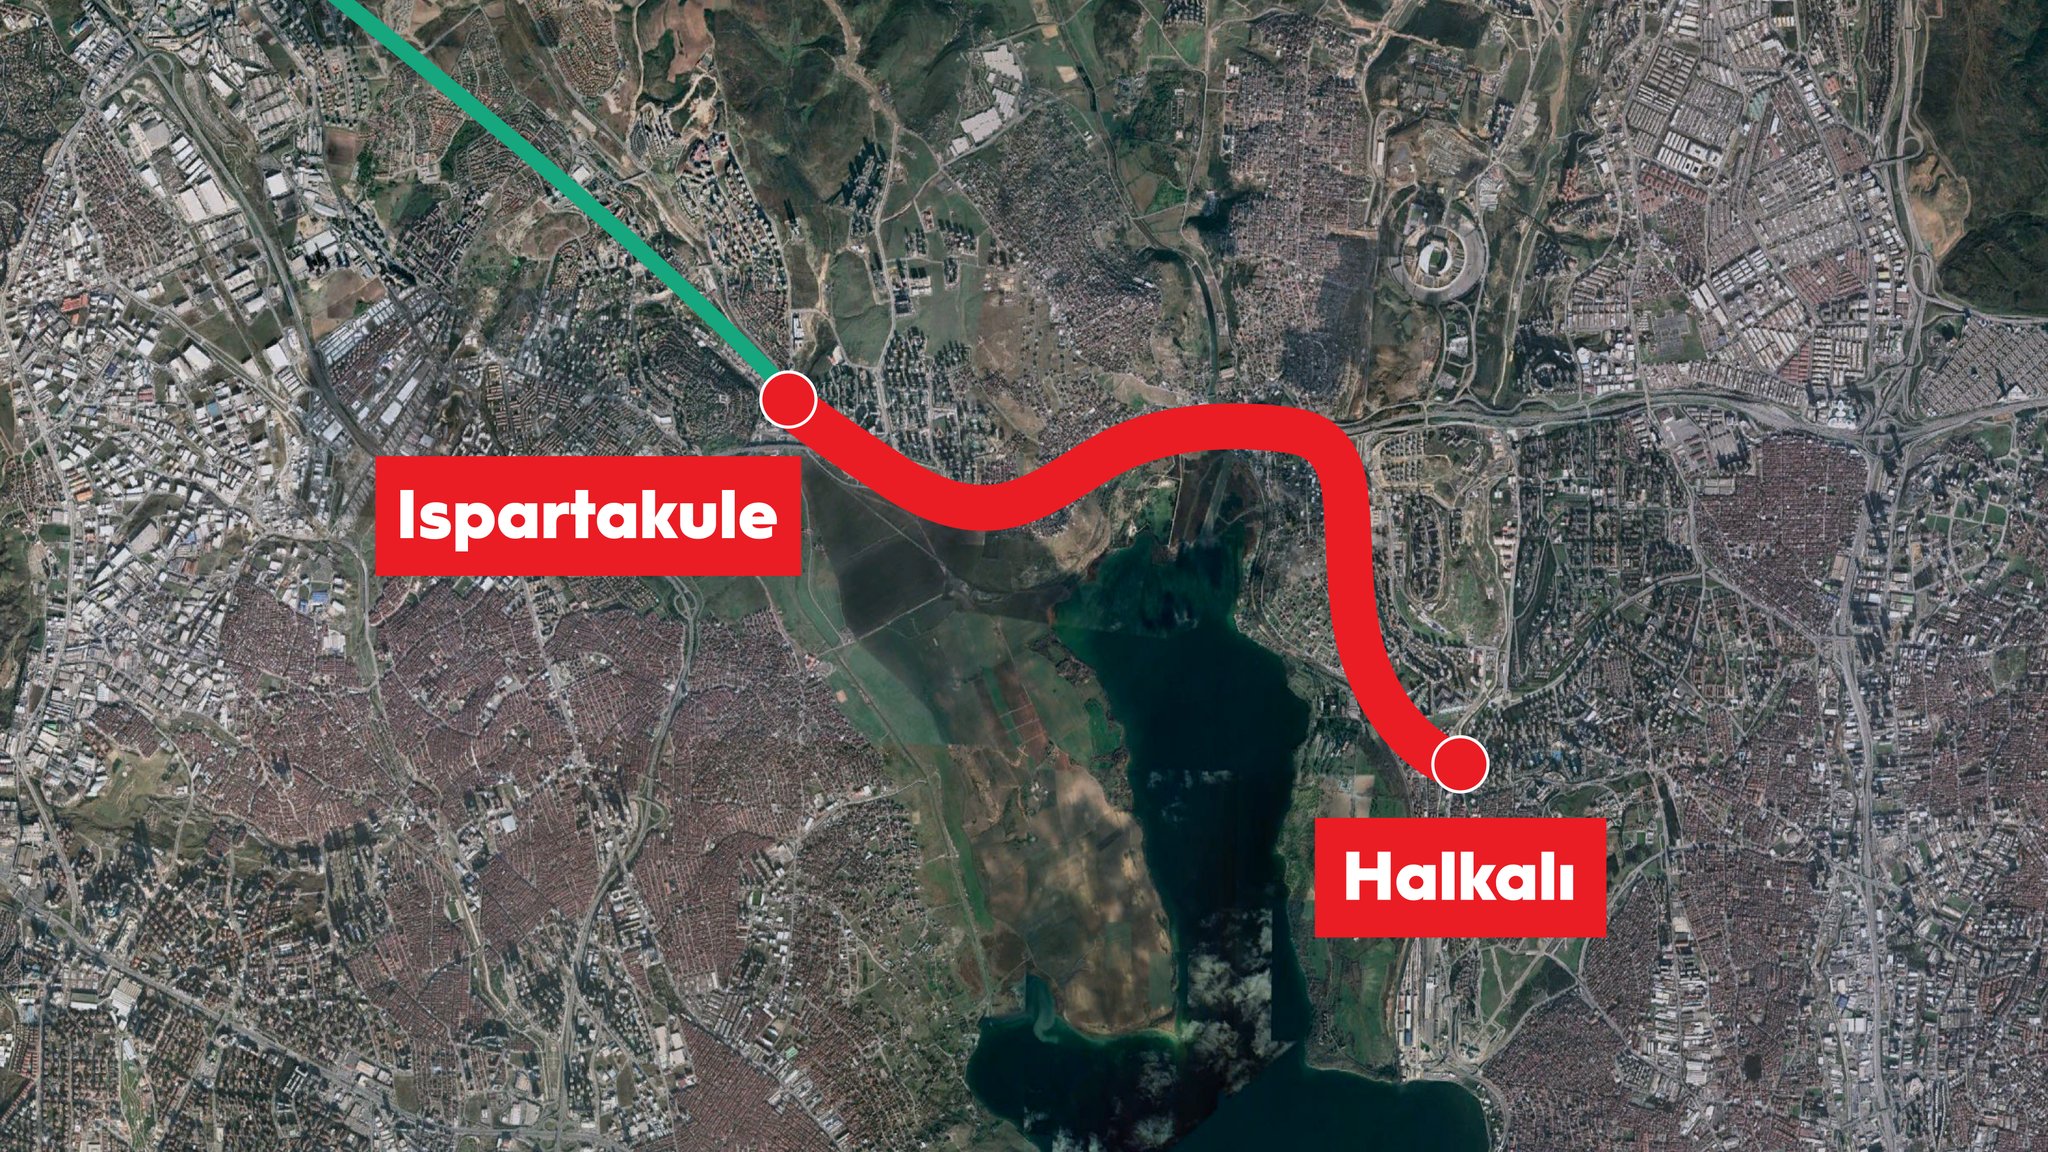 Halkalı-Kapıkule high-speed line section